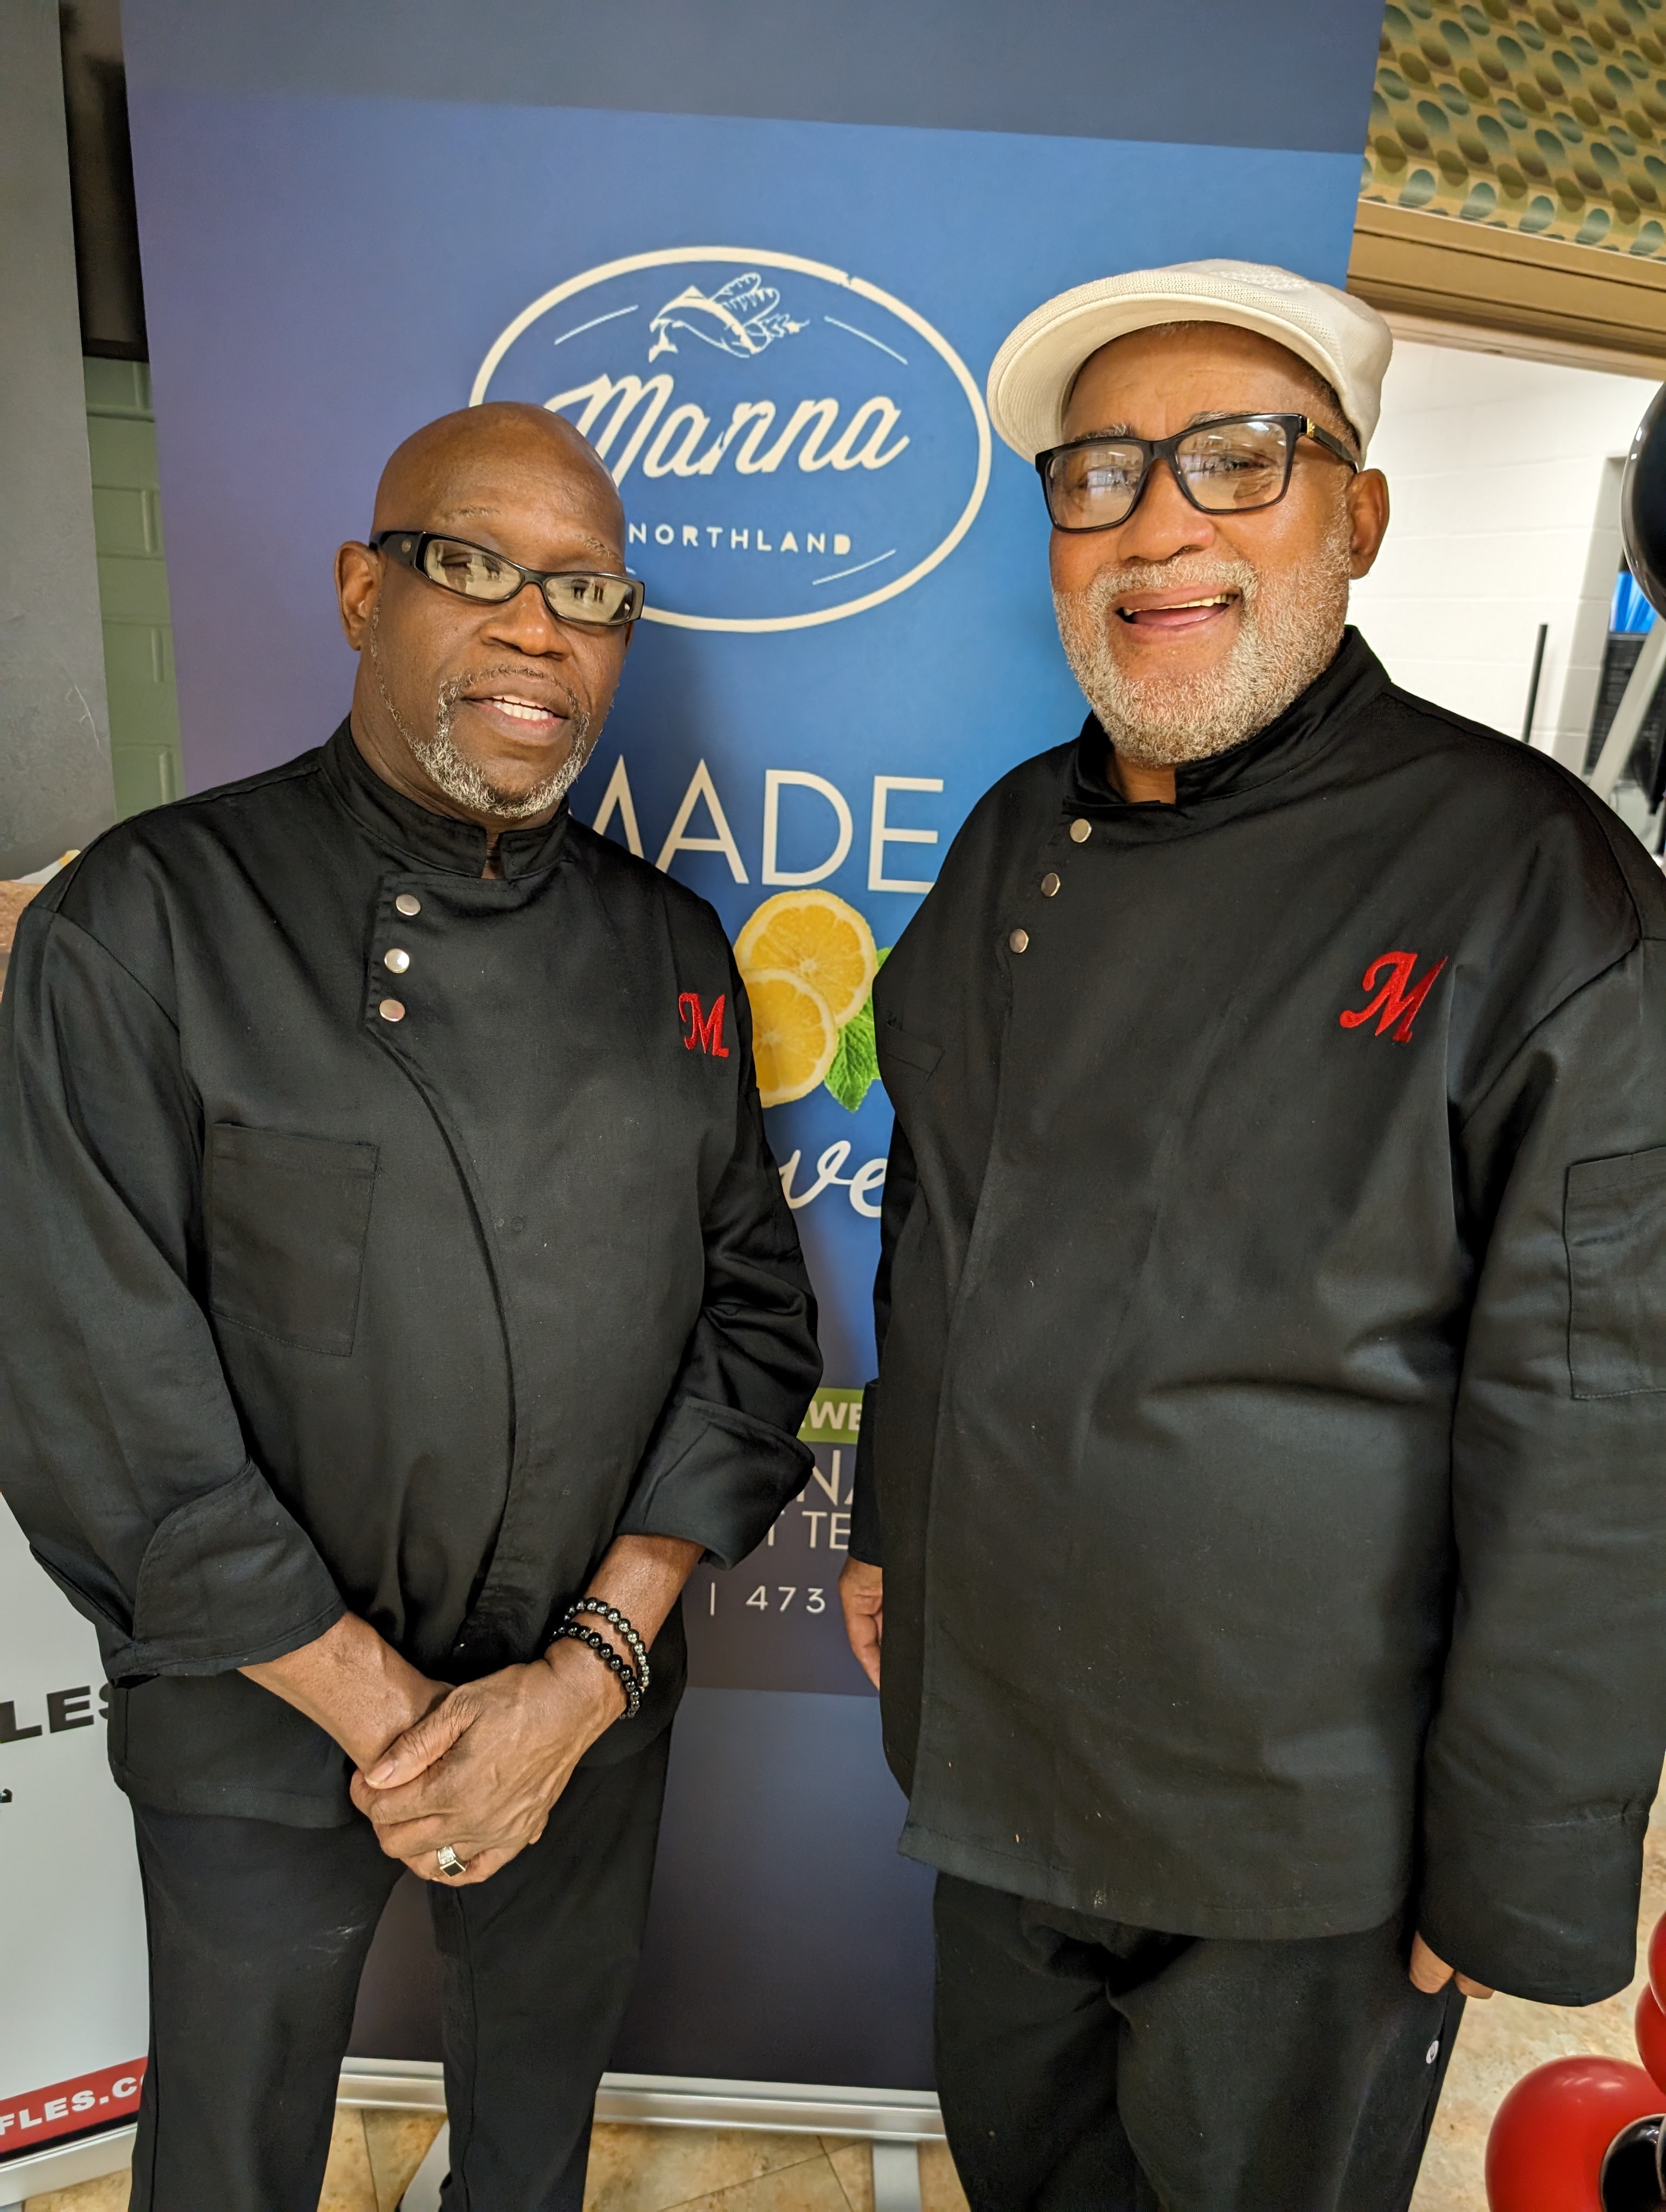 Manna@Northland chef Reginald Ingram and Dale Holt 